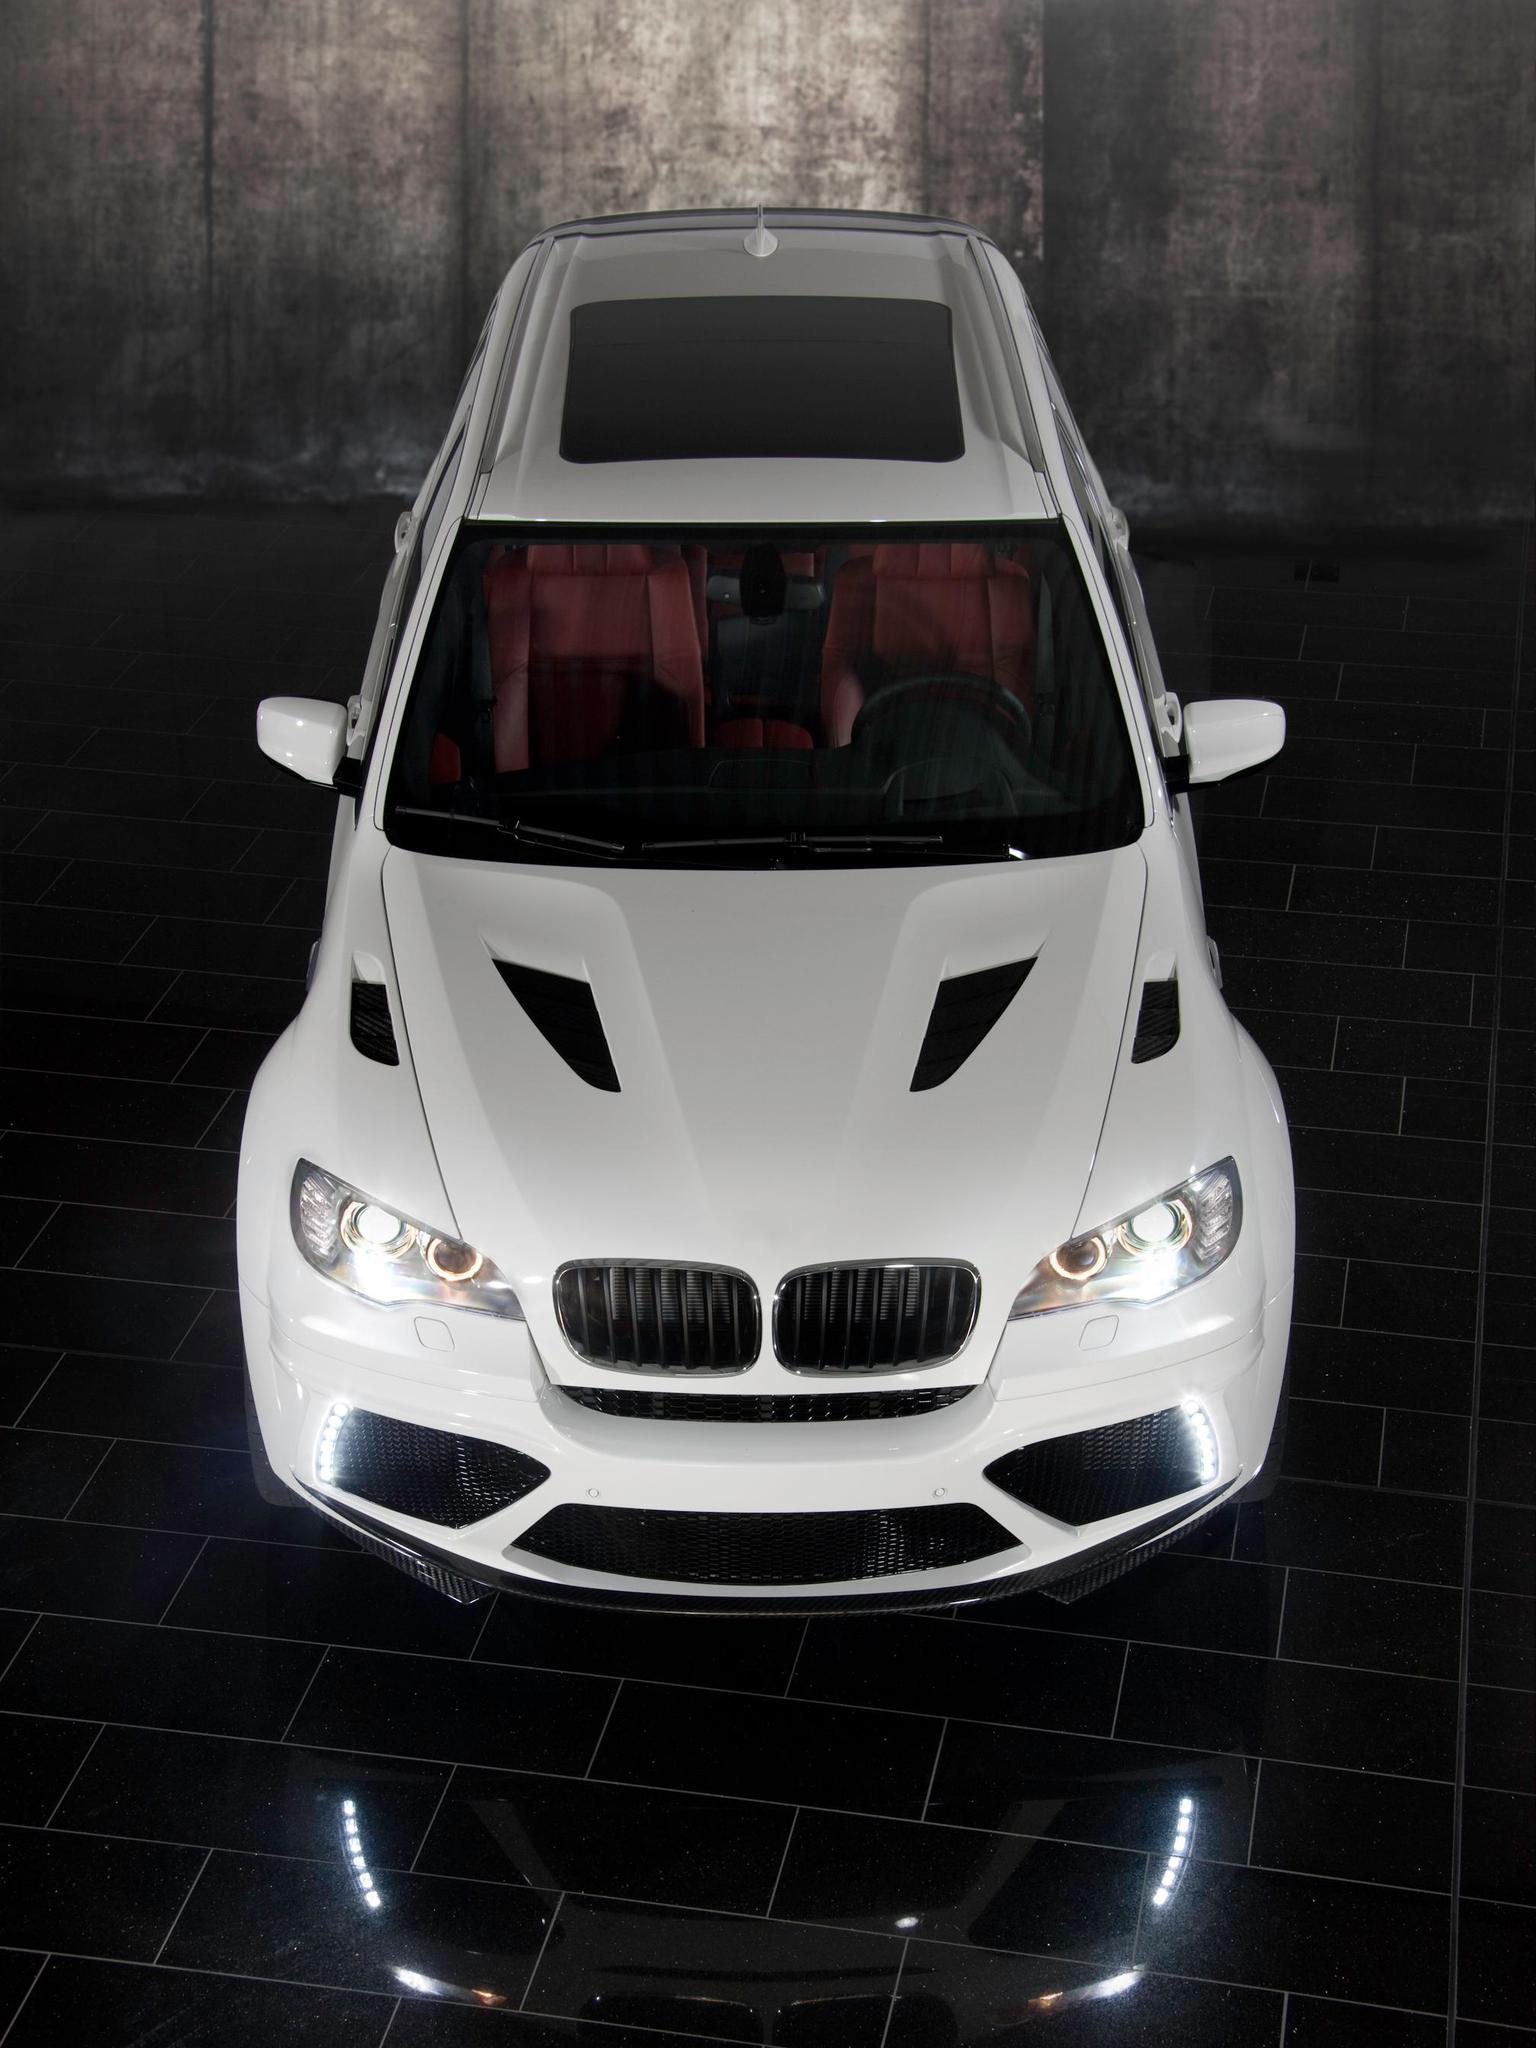 Mansory body kit for BMW X5 new model